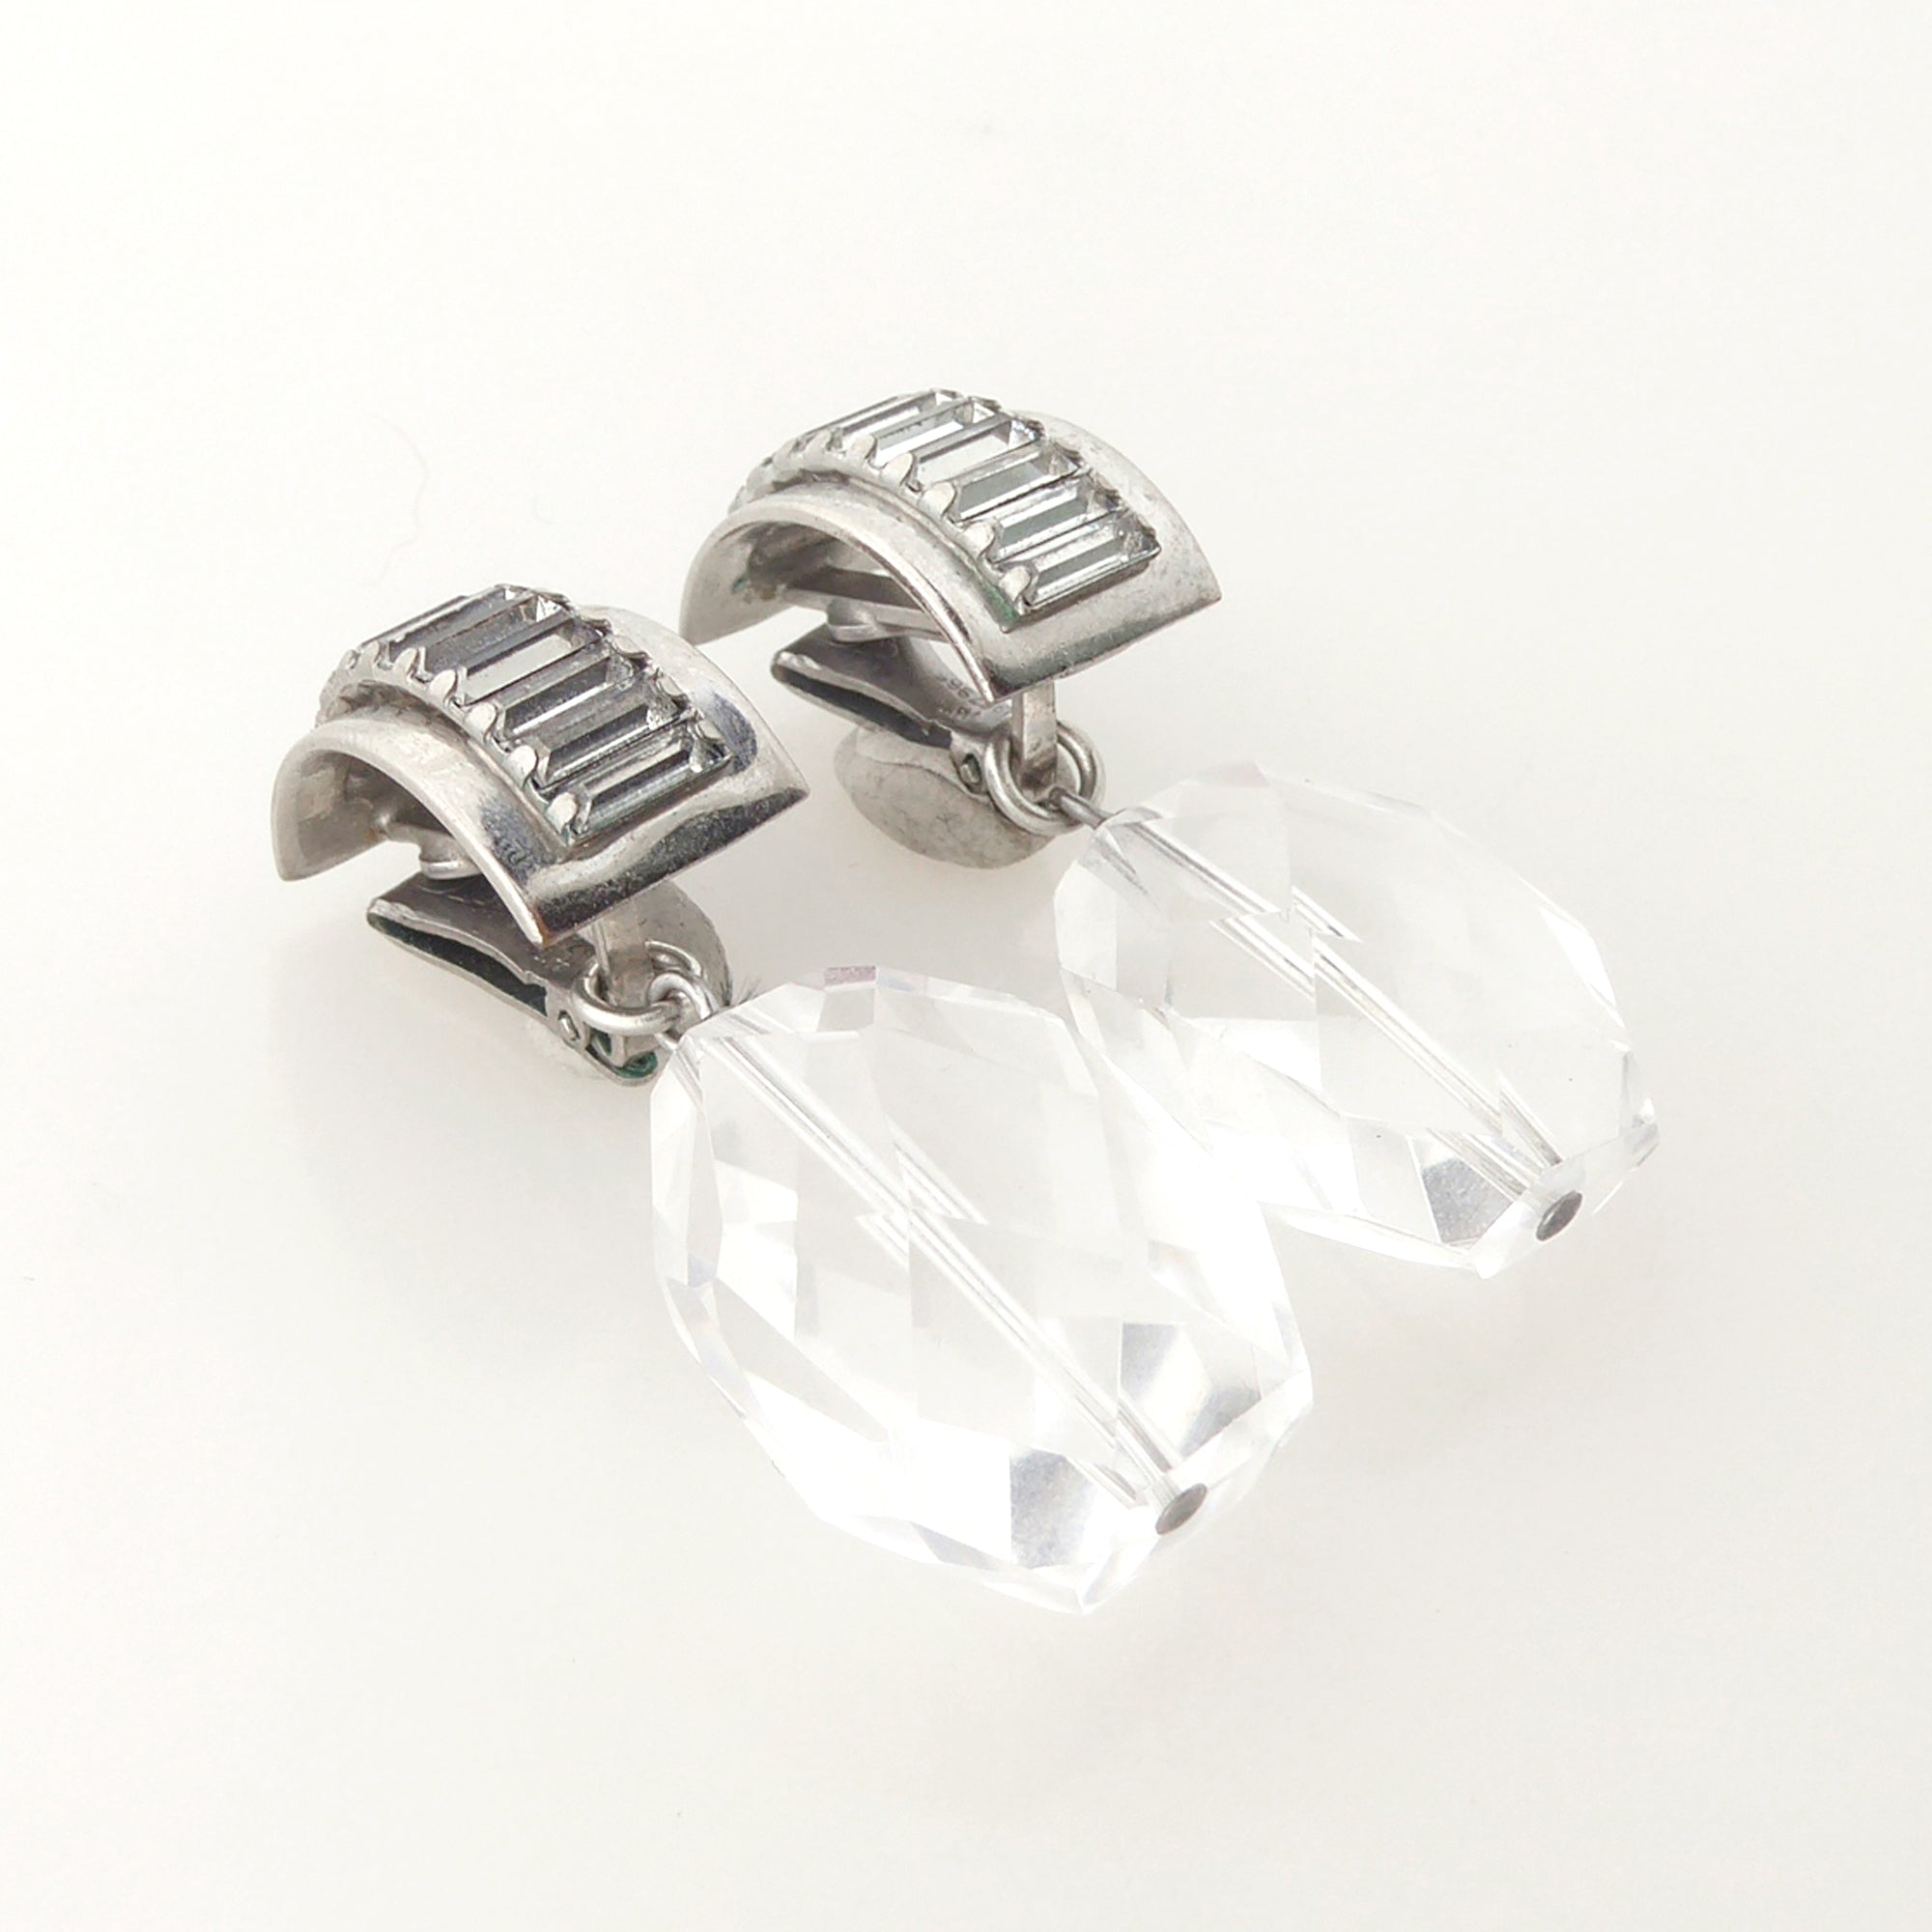 Rhinestone baguette earrings by Jenny Dayco 2